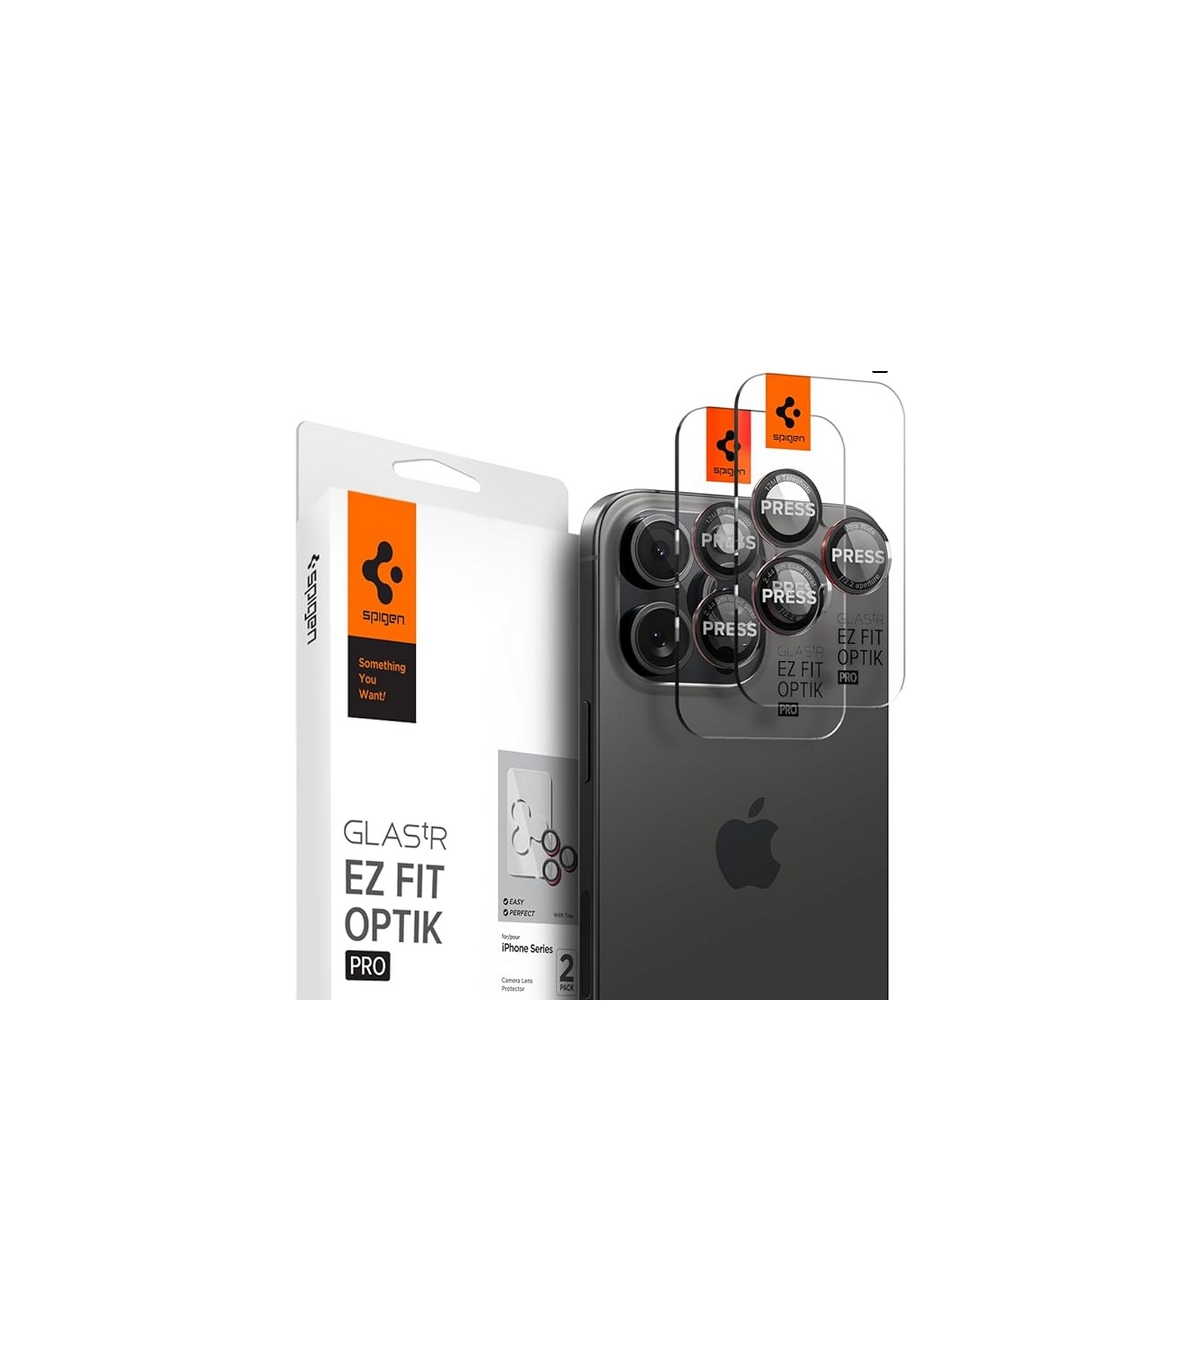 ESR Protection Objectif Caméra pour iPhone 15 Pro Max/iPhone 15